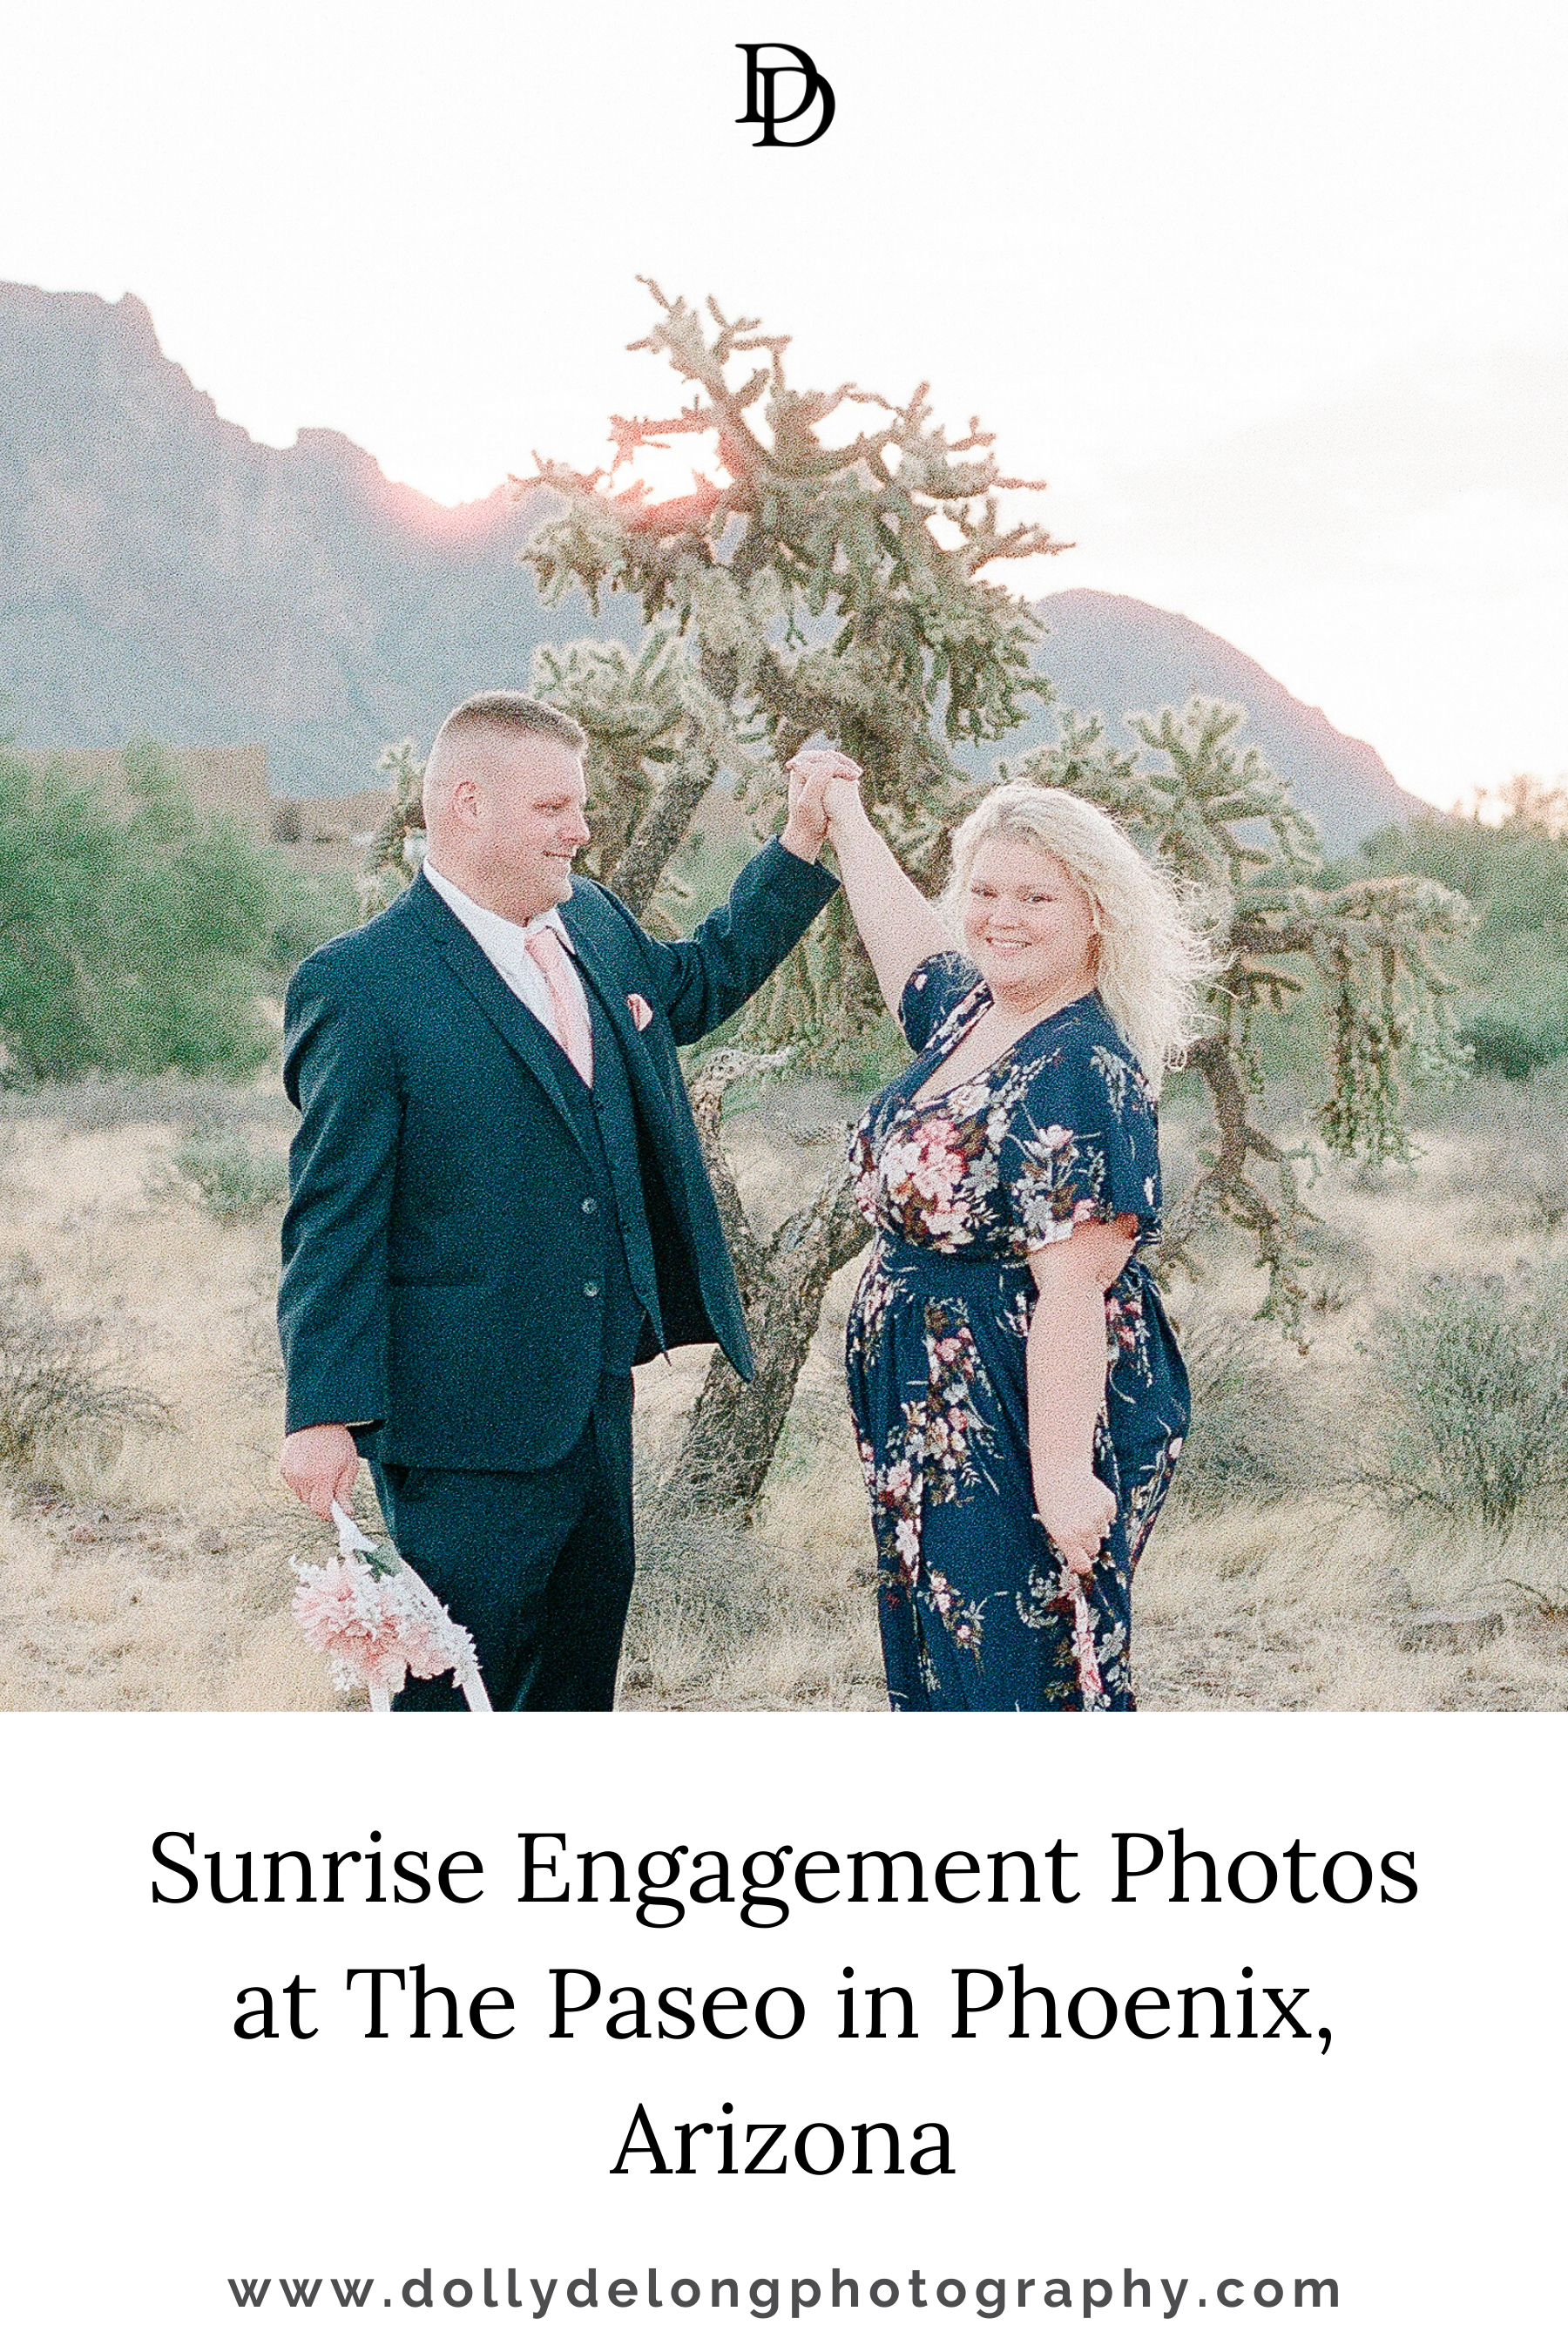 Sunrise Engagement Photos at The Paseo in Phoenix, Arizona